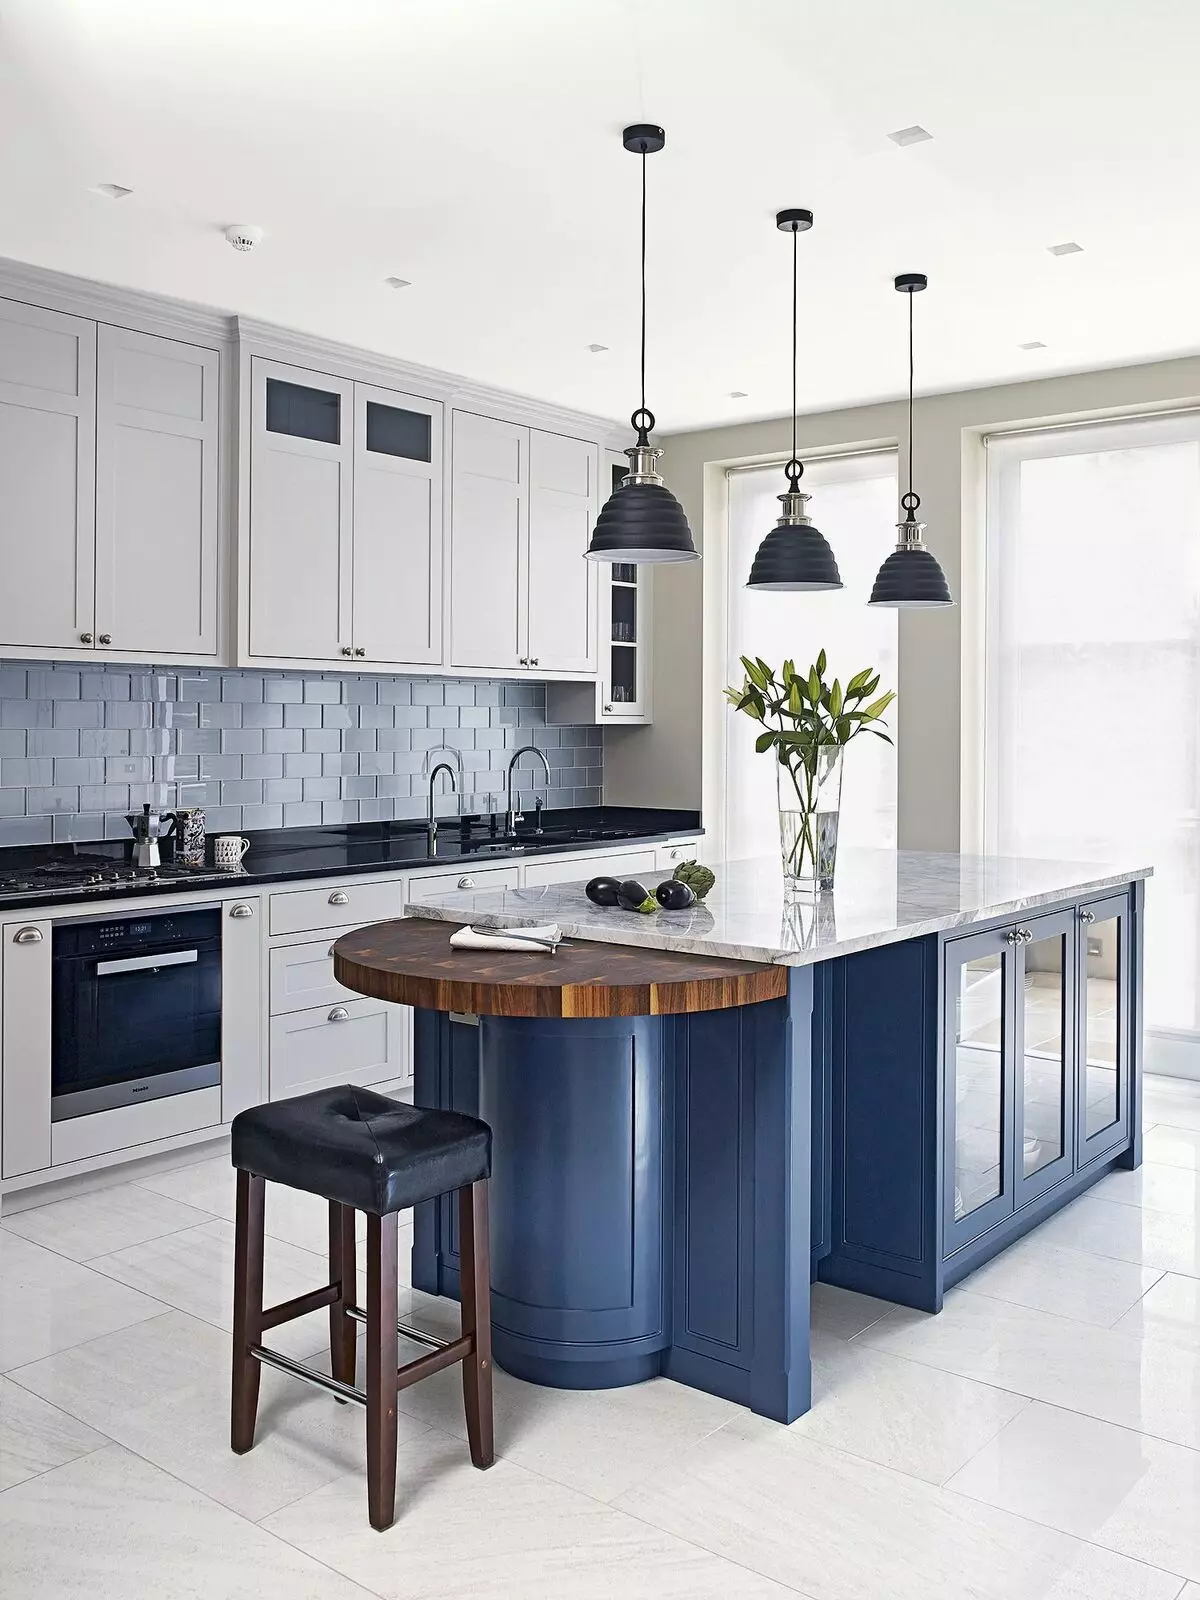 藍廚房（82張照片）：在藍色廚房套裝內部合併哪種顏色？淺藍色和深藍色色調的廚房設計 9555_16